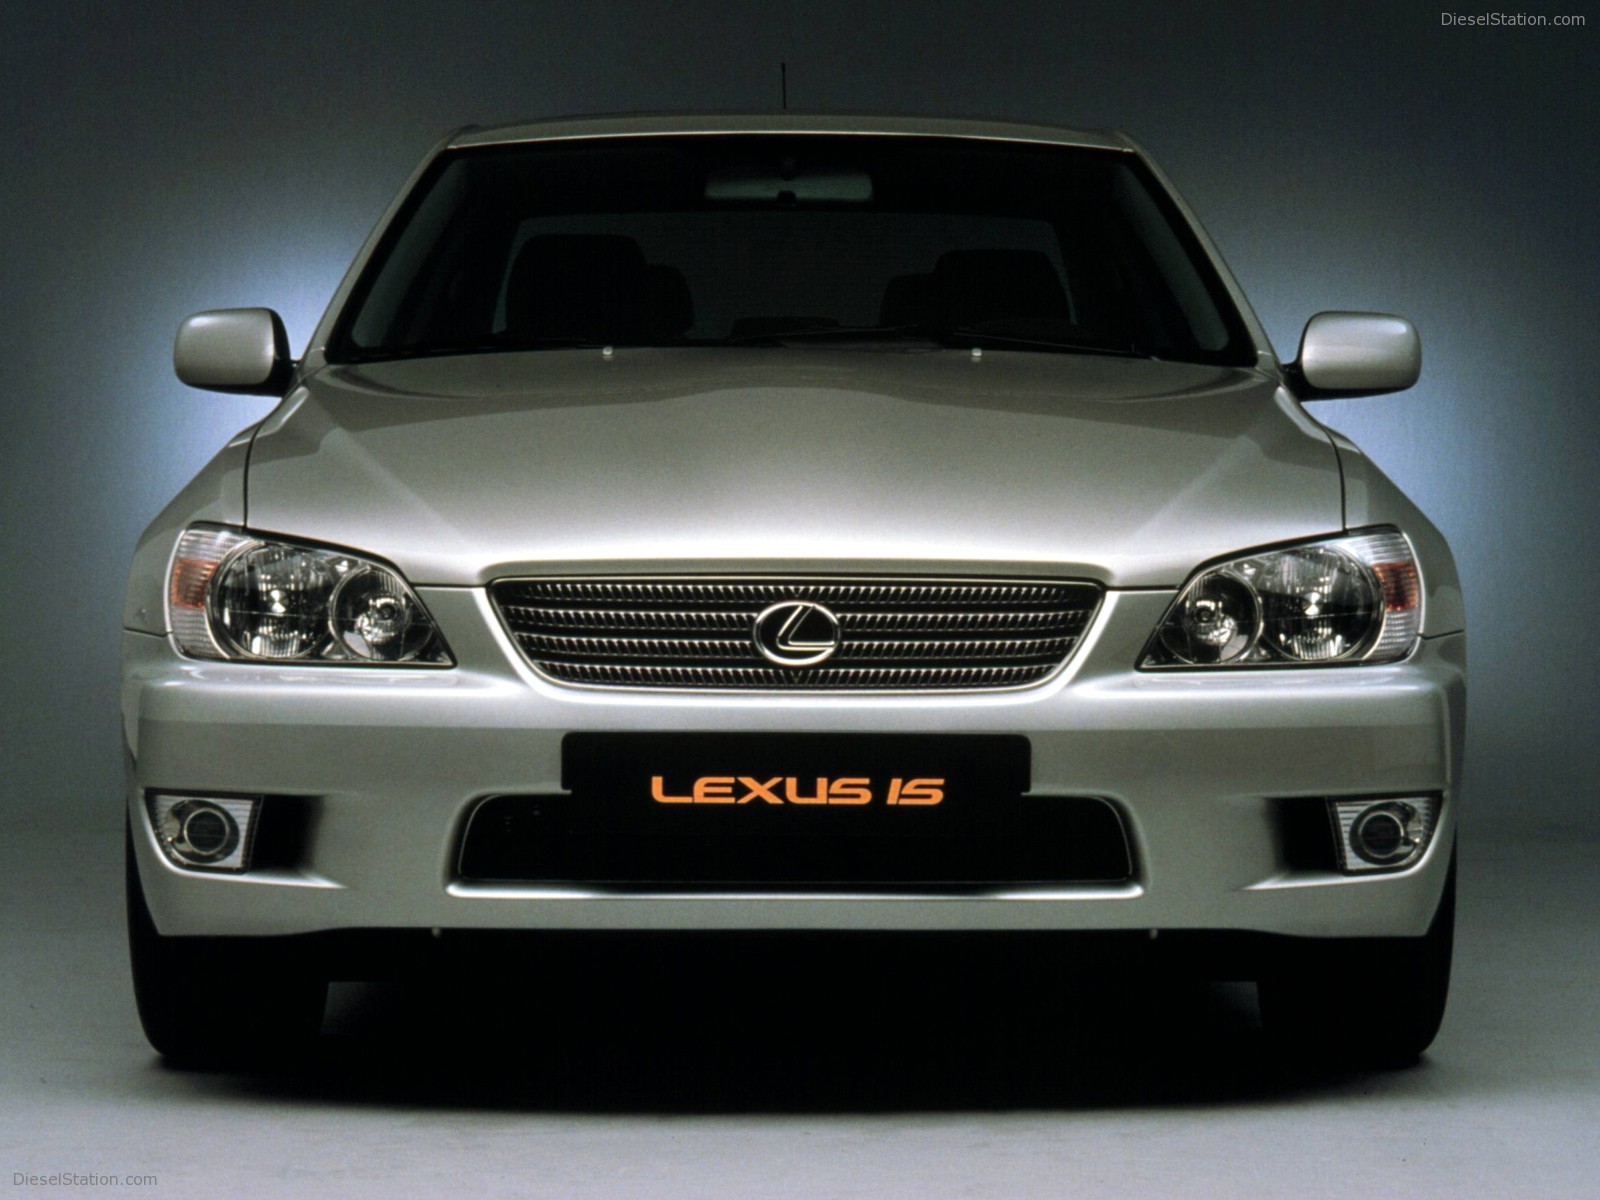 Lexus Is300 Exotic Car Photo Of Diesel Station